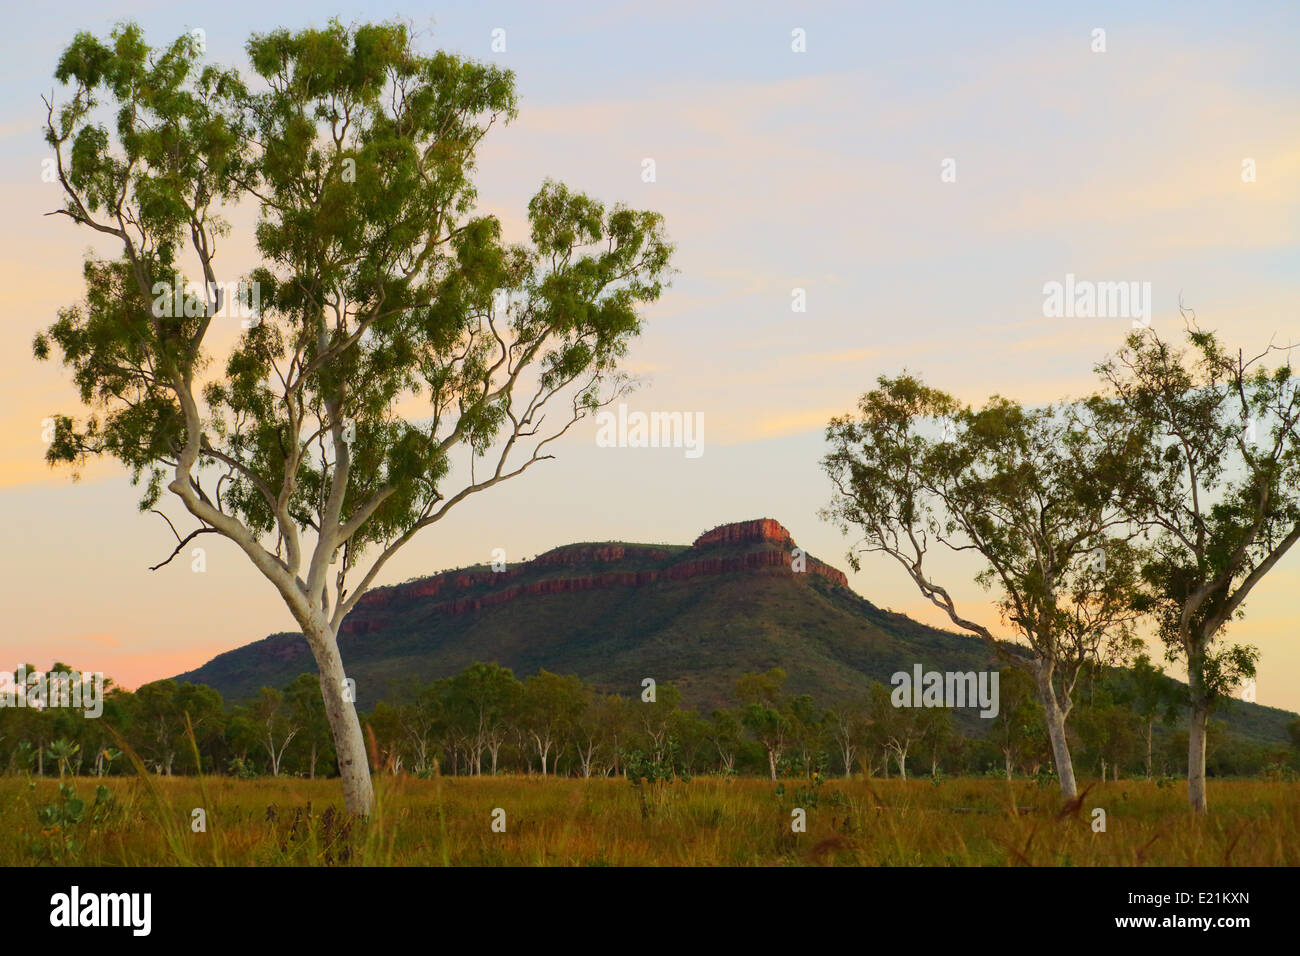 Eine regelmäßige Kimberley-Szene, zu sehen in der Dämmerung - Eukalyptus-Bäume und geologische Aufschluss, in der Nähe von Kununurra, Western Australia Stockfoto